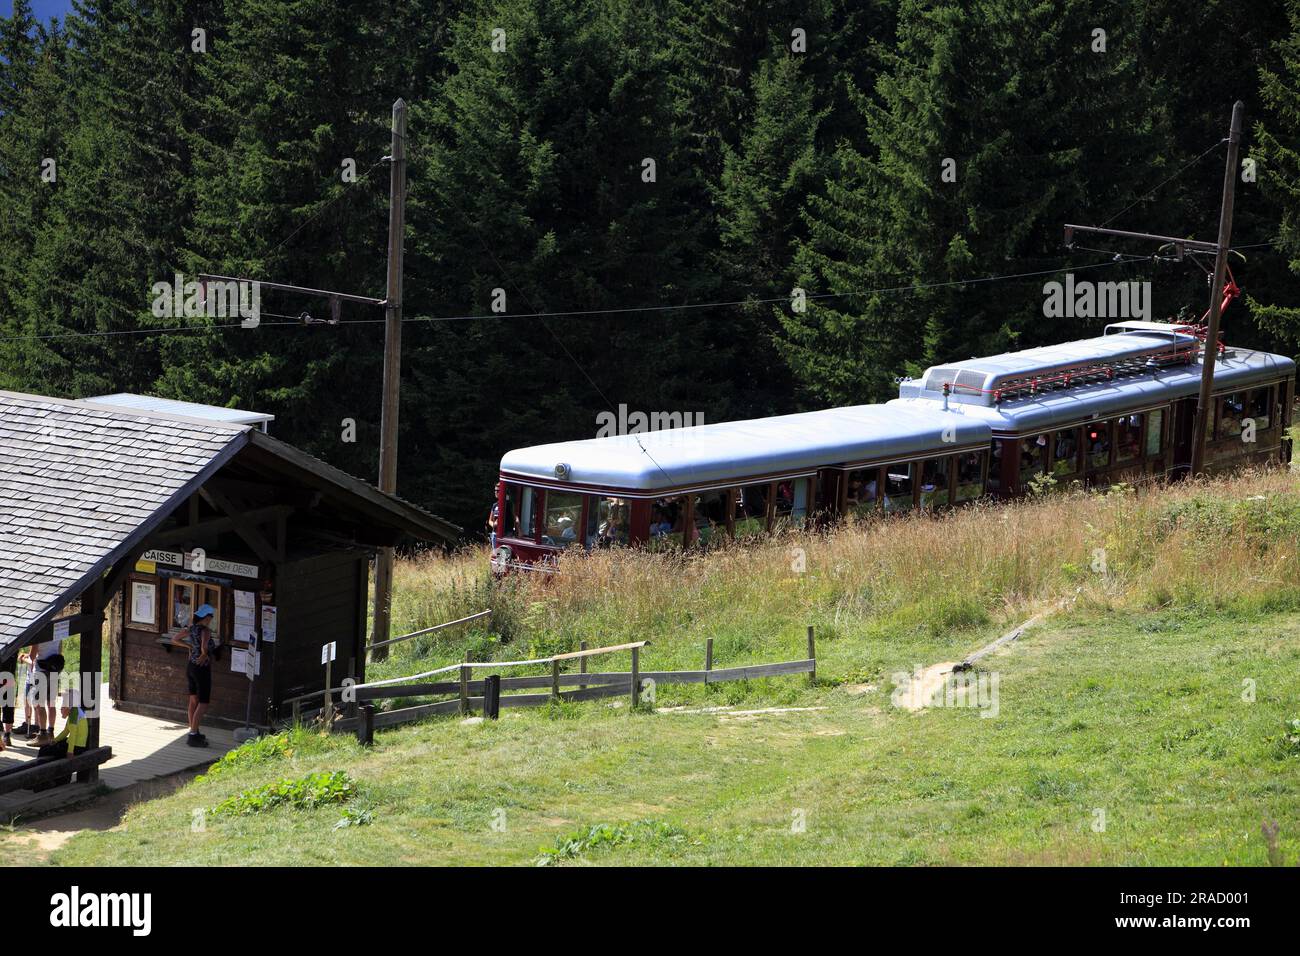 The Mont Blanc rack railway, Saint-Gervais-les-Bains, France Stock Photo